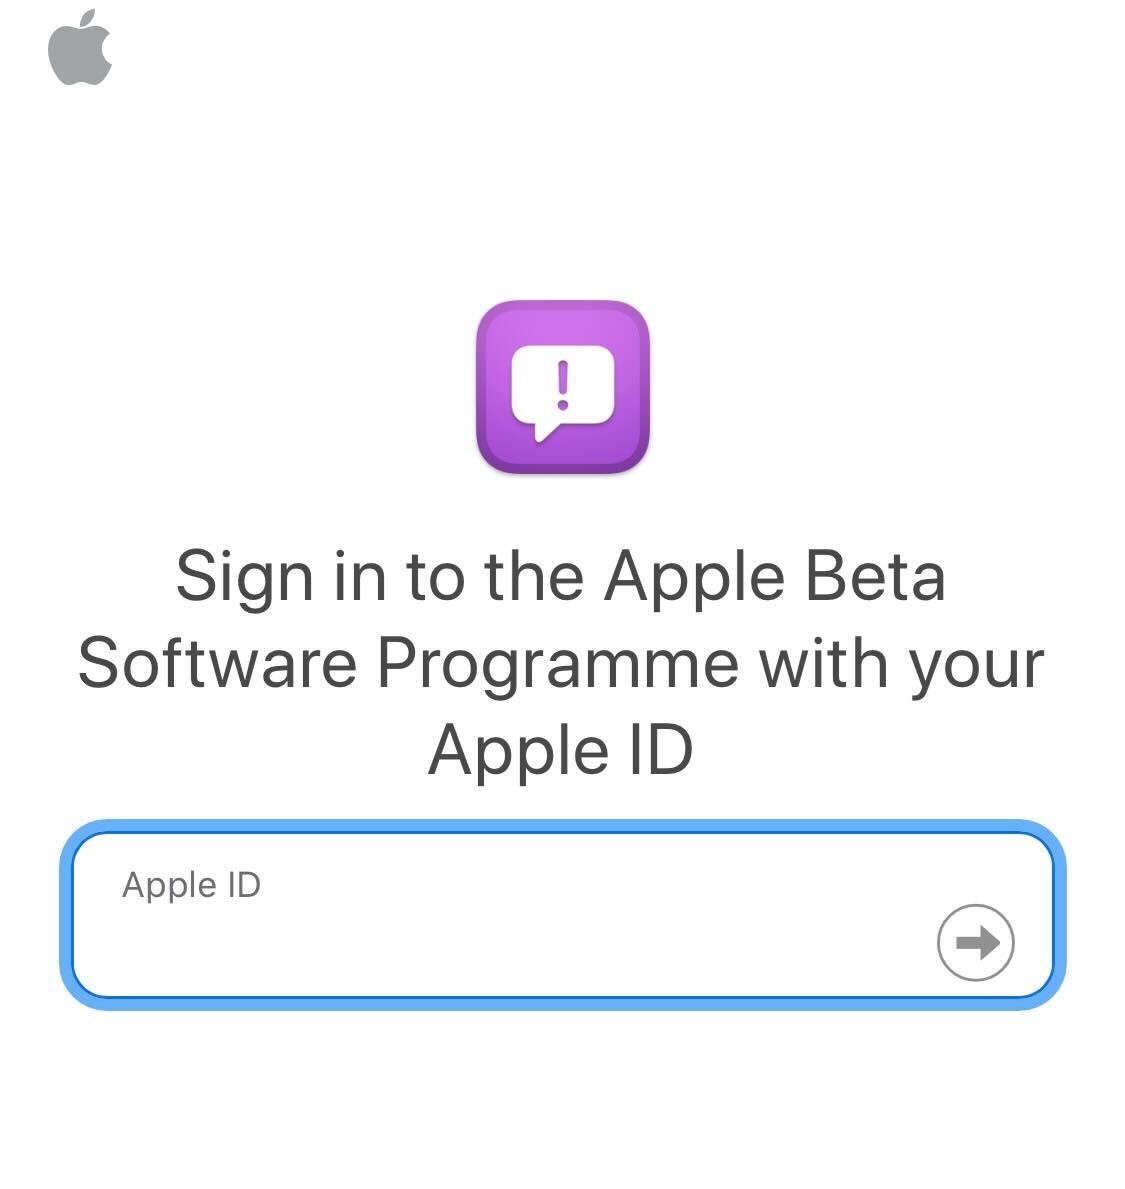 Ingrese los detalles de su ID de Apple